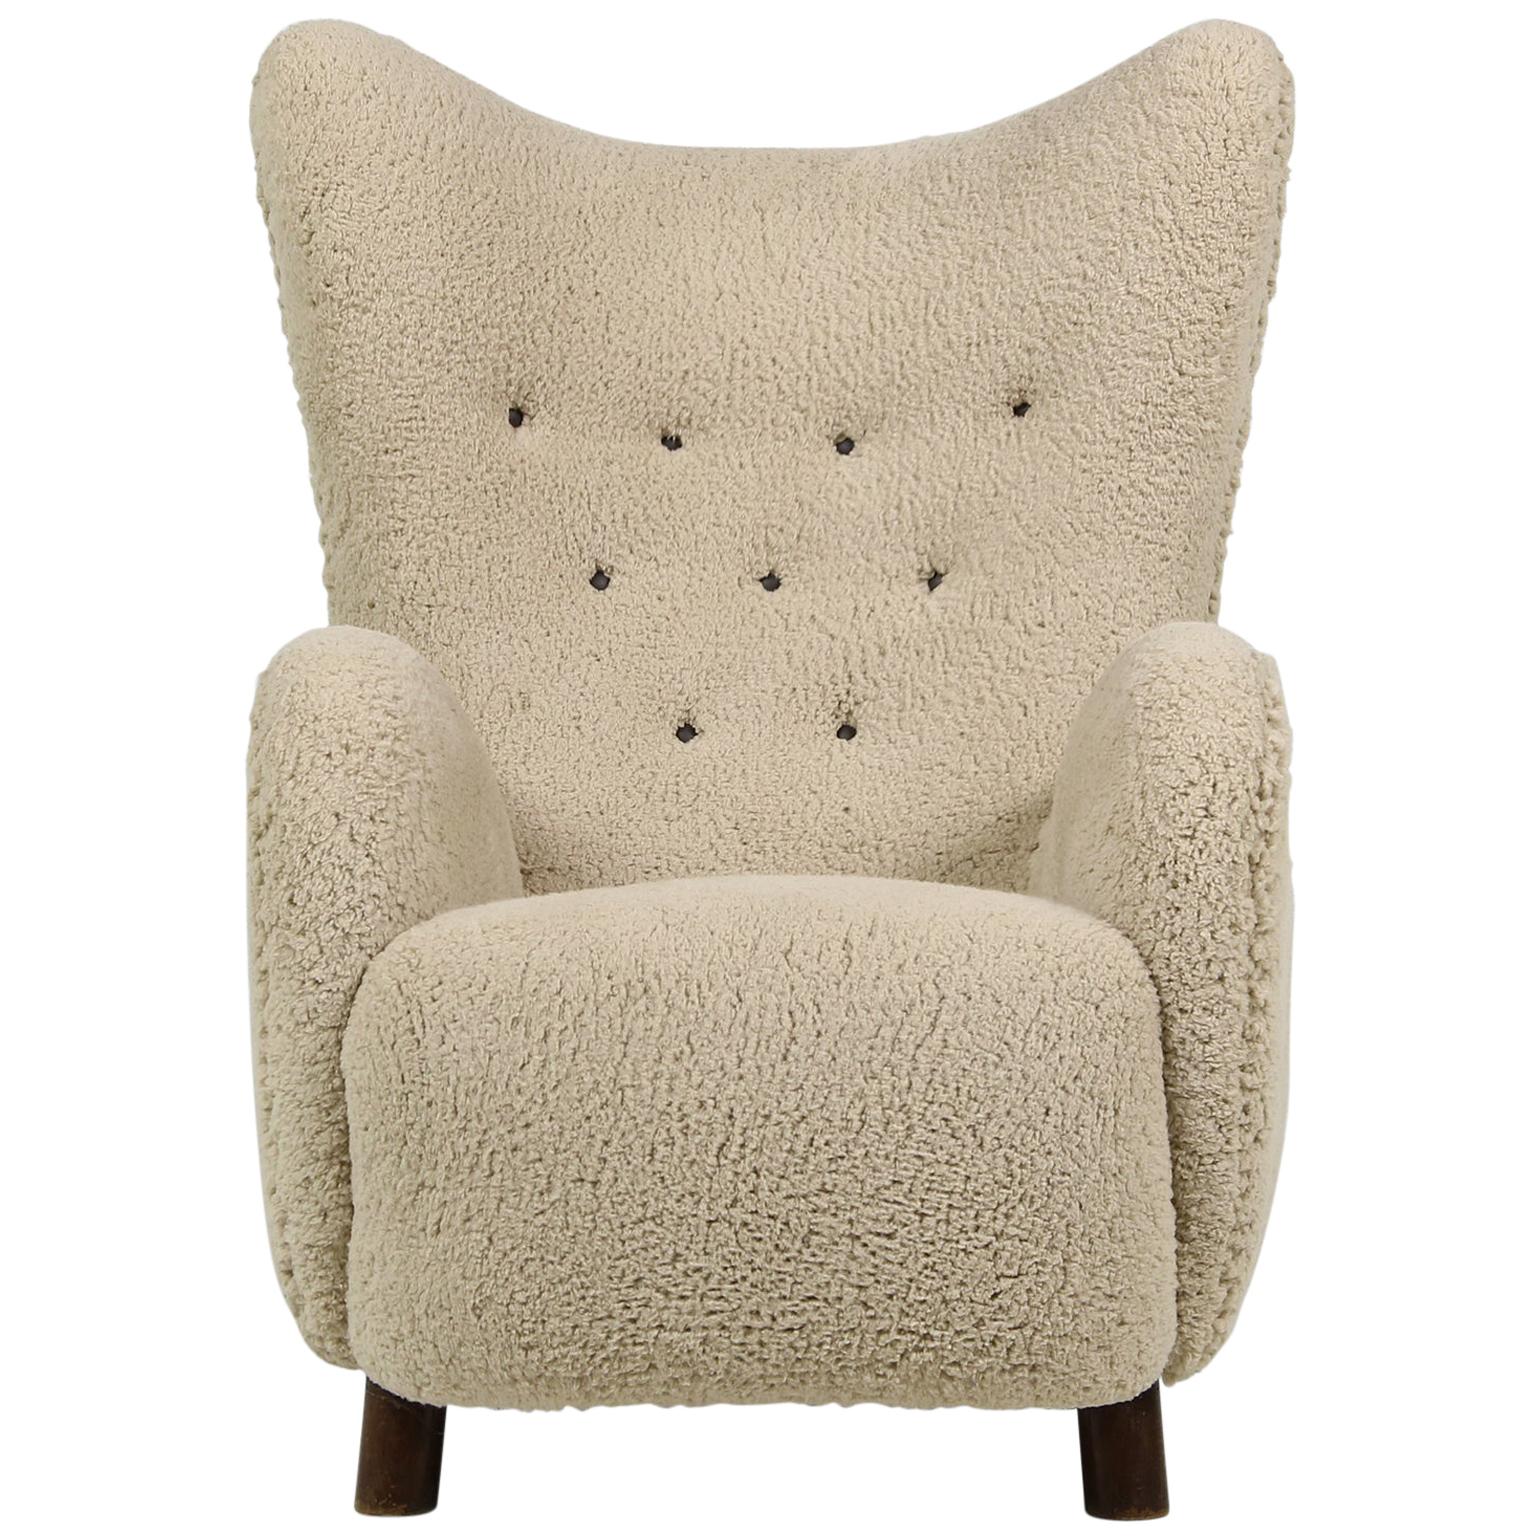 Mogens Lassen Lounge Wingback Chair 1940 Denmark, Teddy Fur & Leather, Sheepskin